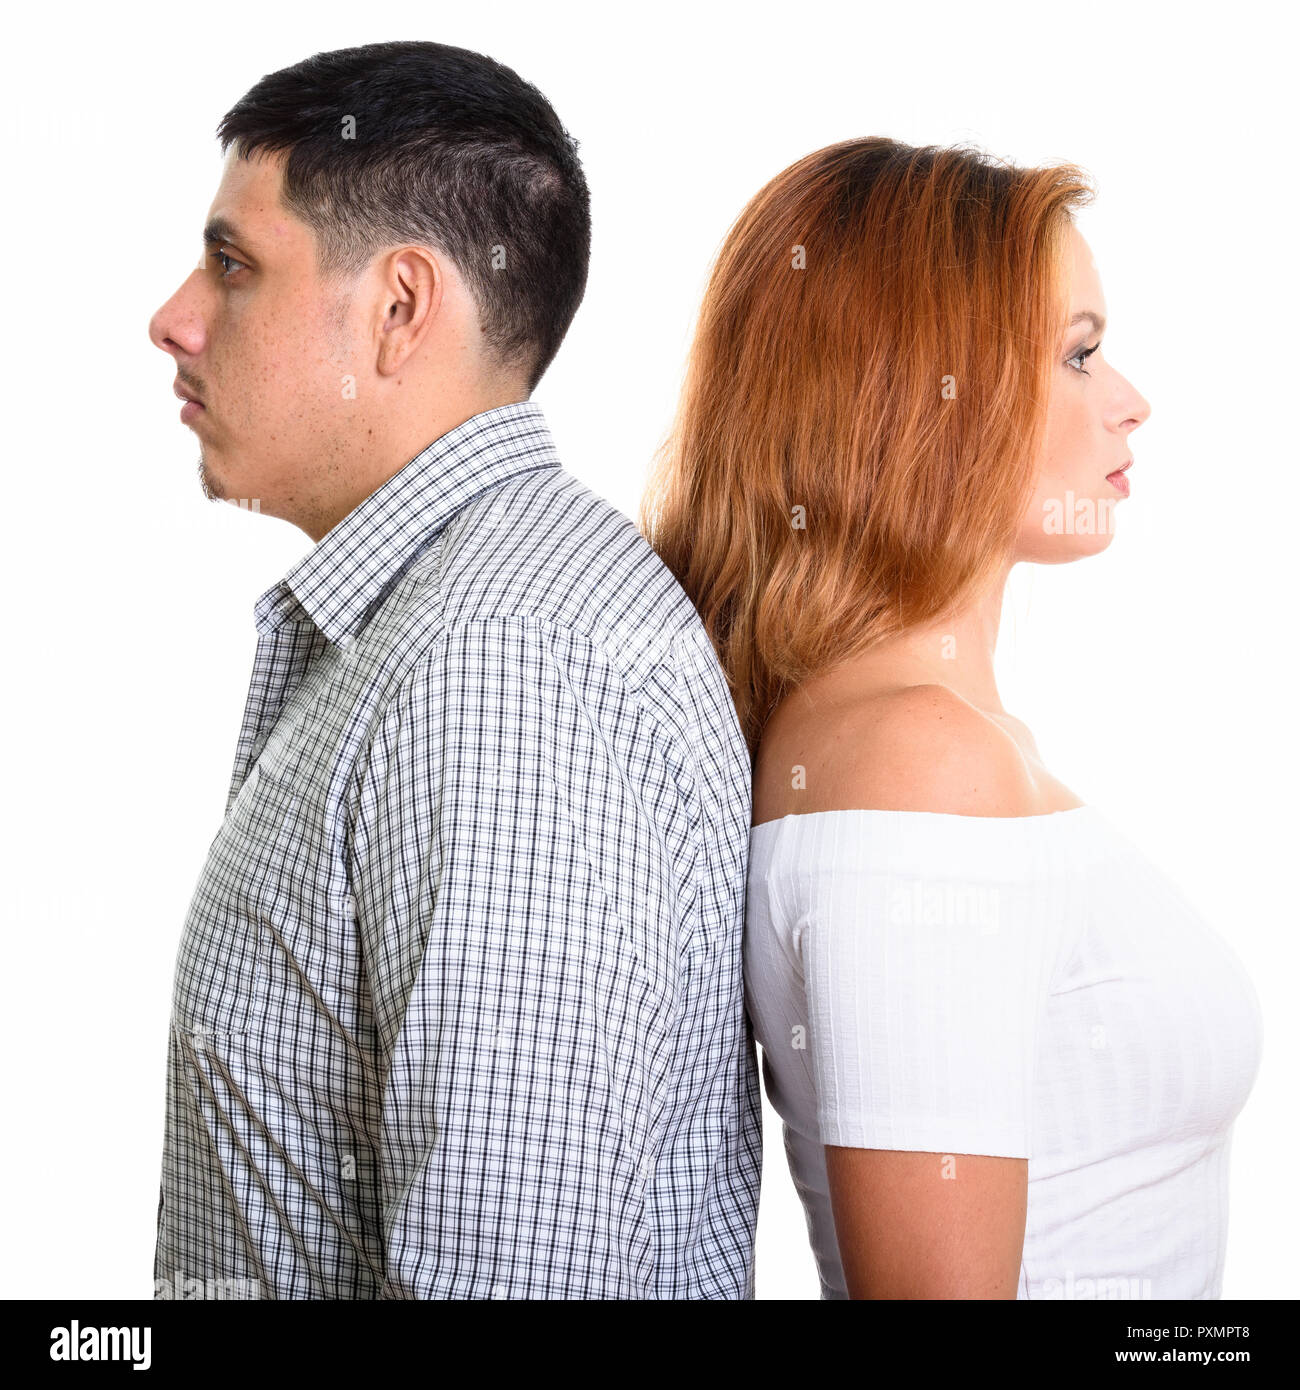 Foto de estudio de pareja joven hispana con espalda contra cada uno de ellos Foto de stock